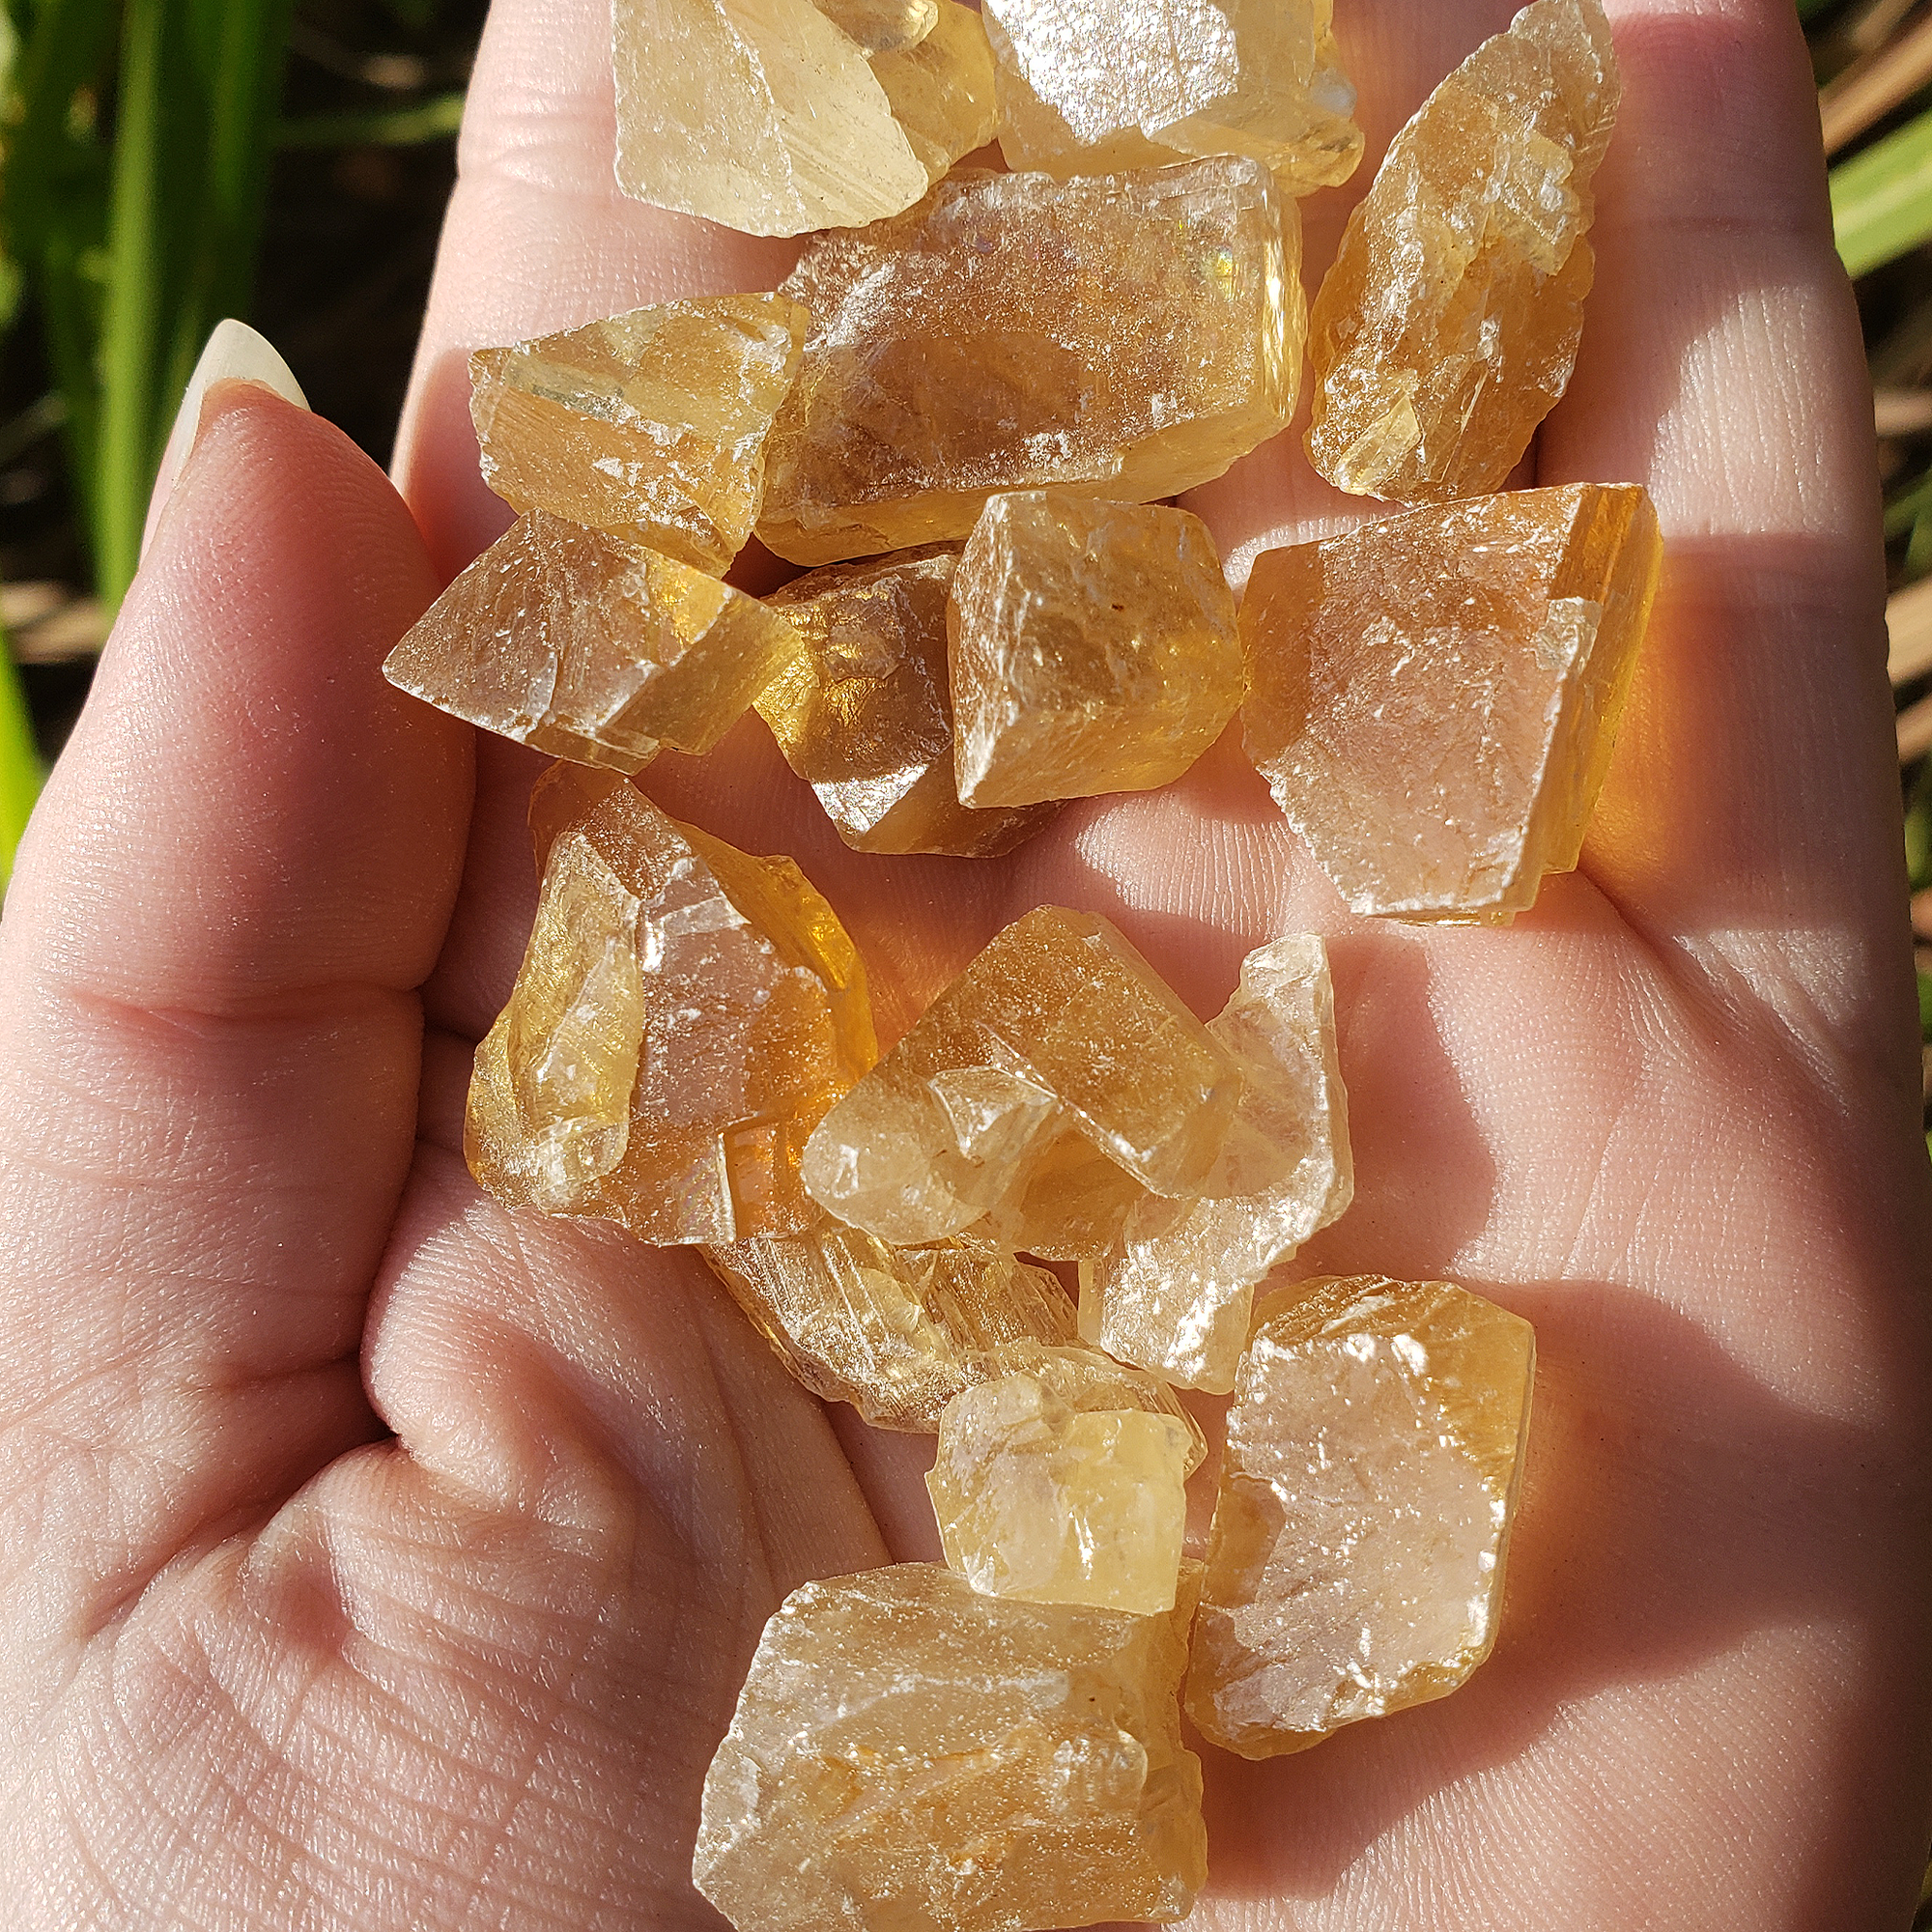 Honey Calcite Natural Raw Crystals Rough Gemstones - 3 Mini Stones - Close Up In Hand